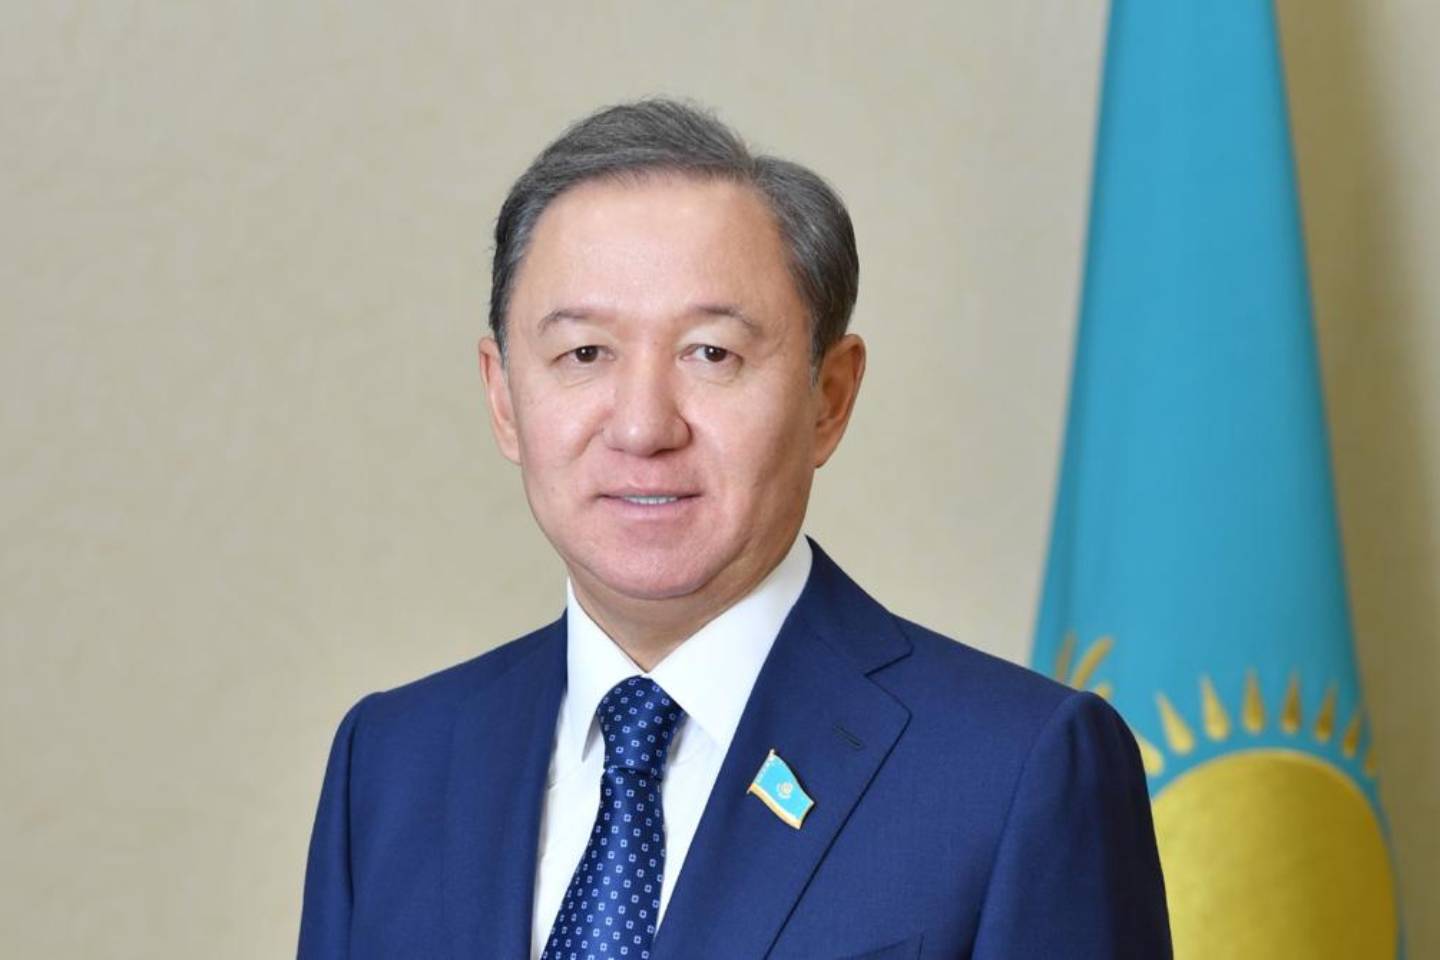 Новости Казахстана / Политика в Казахстане / Председатель Мажилиса подал в отставку